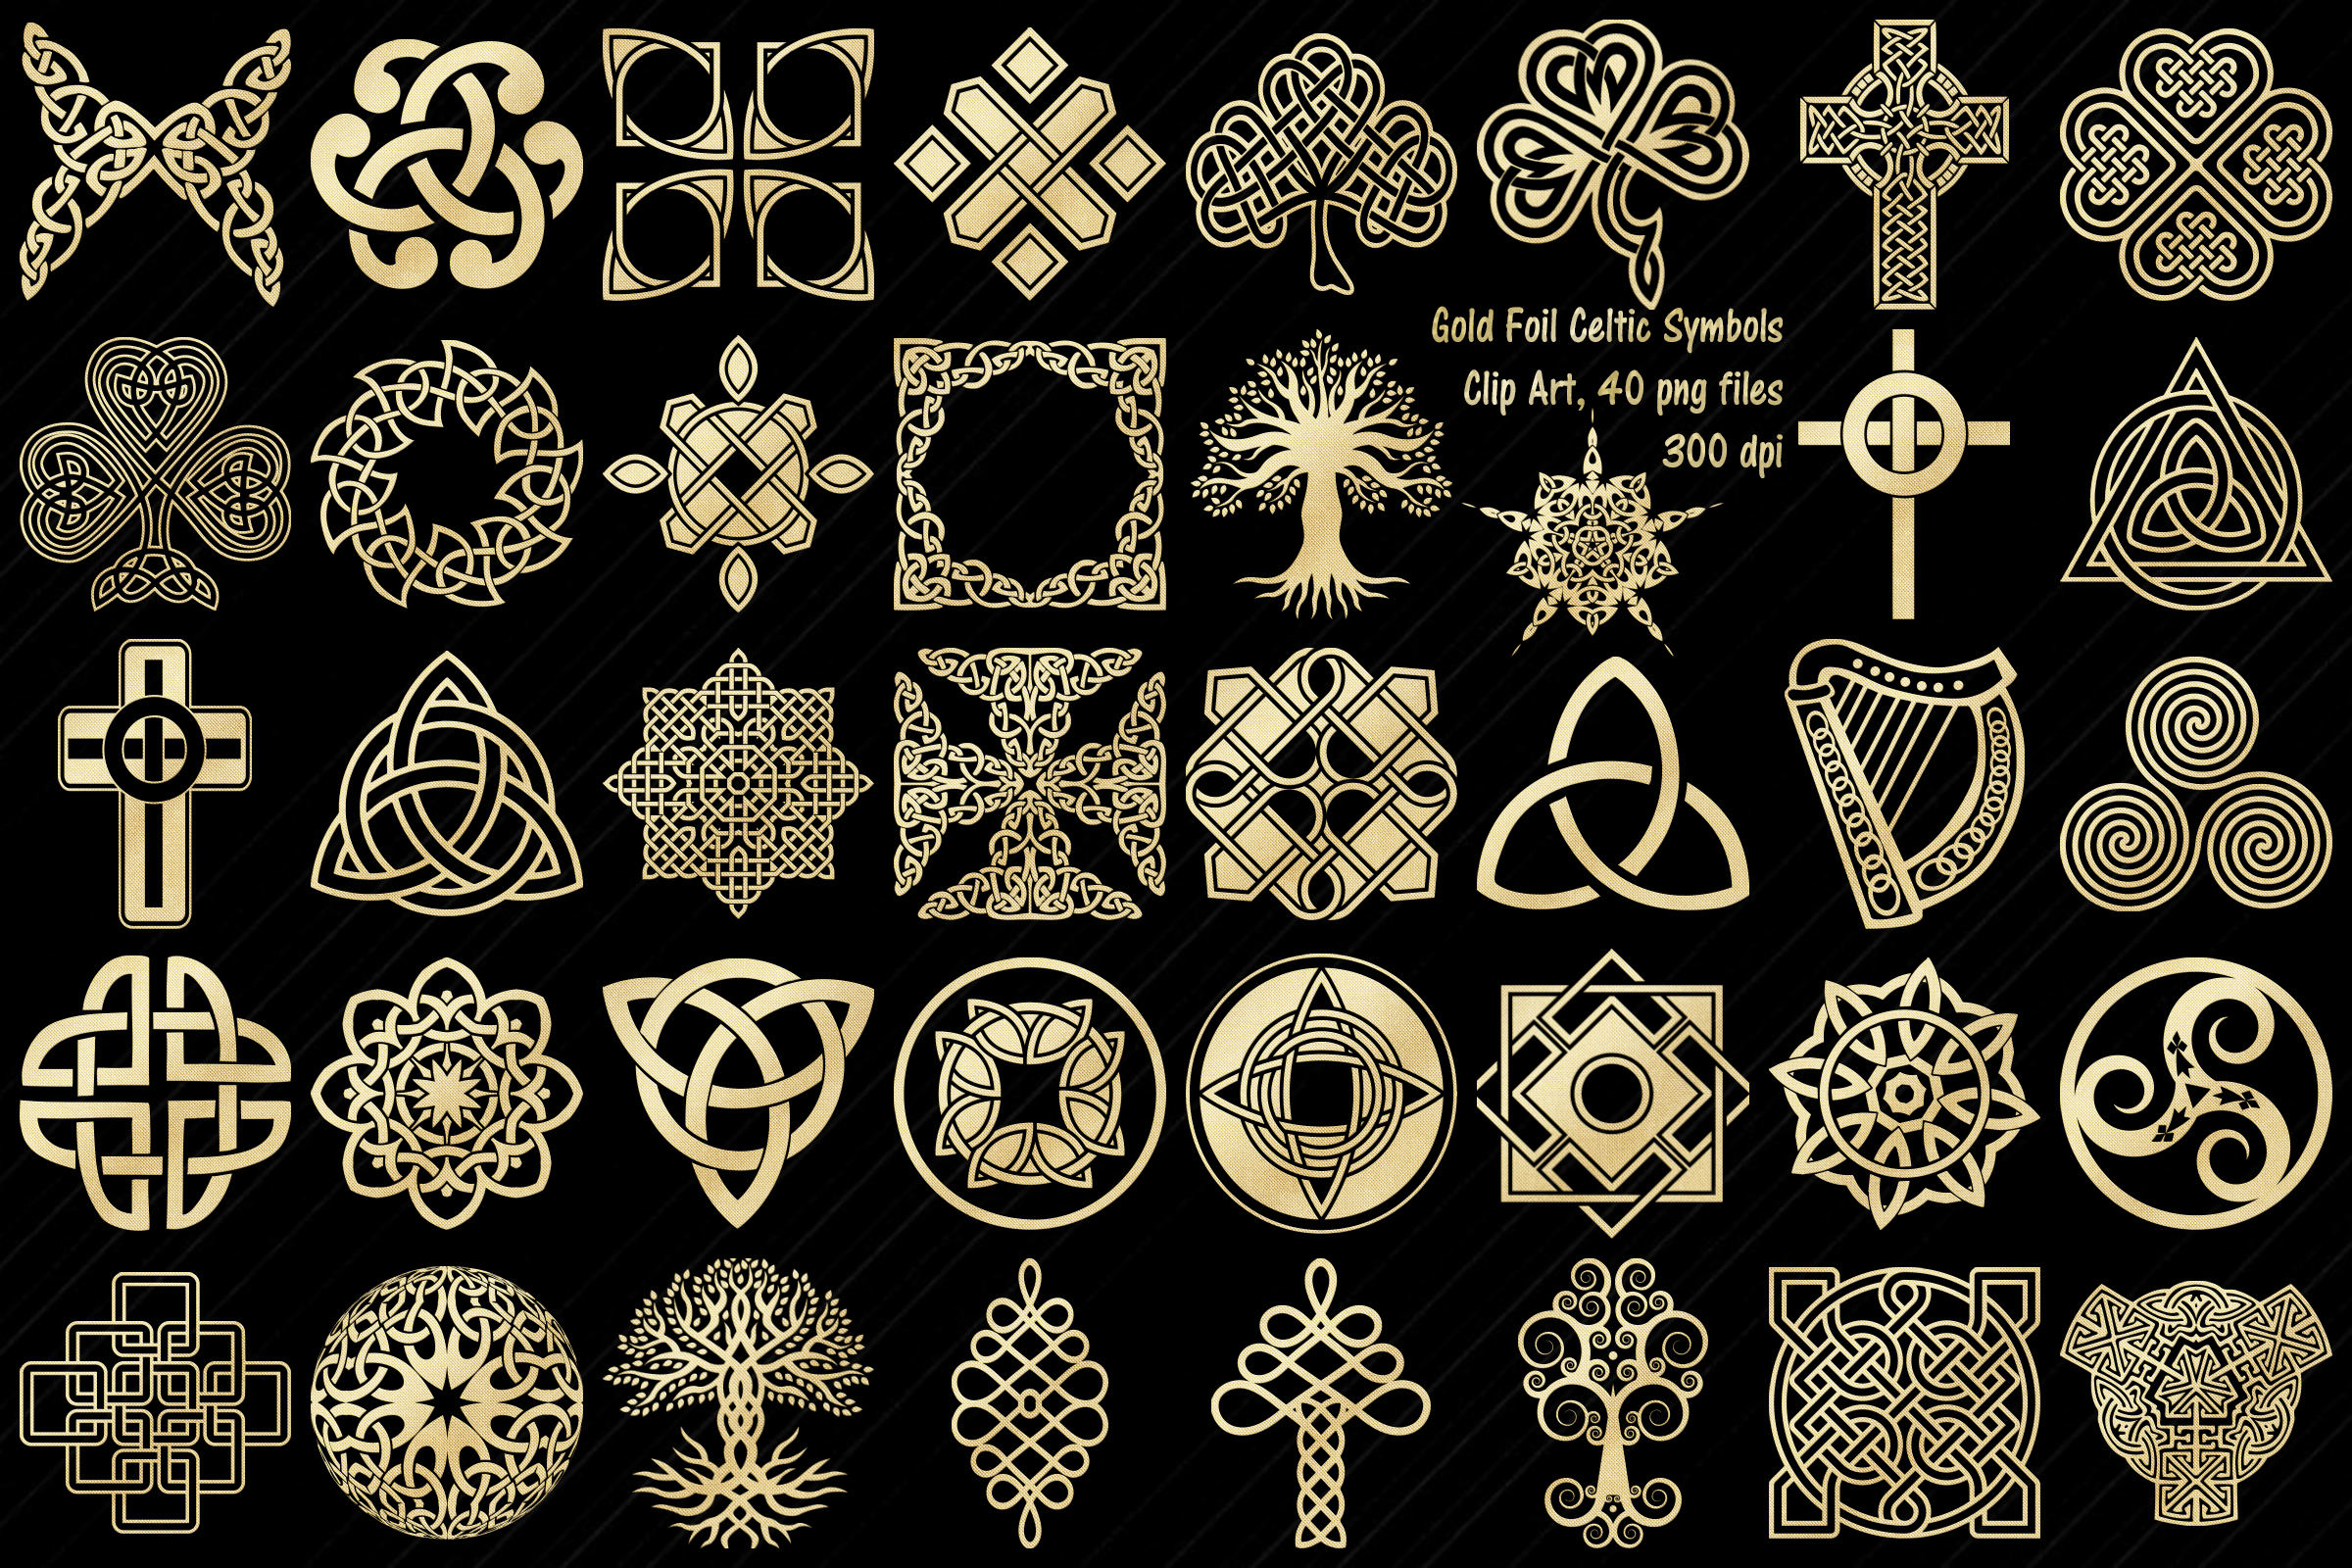 Celtic Embroidery Patterns Gold Foil Celtic Symbols Knots Crosses Clip Art